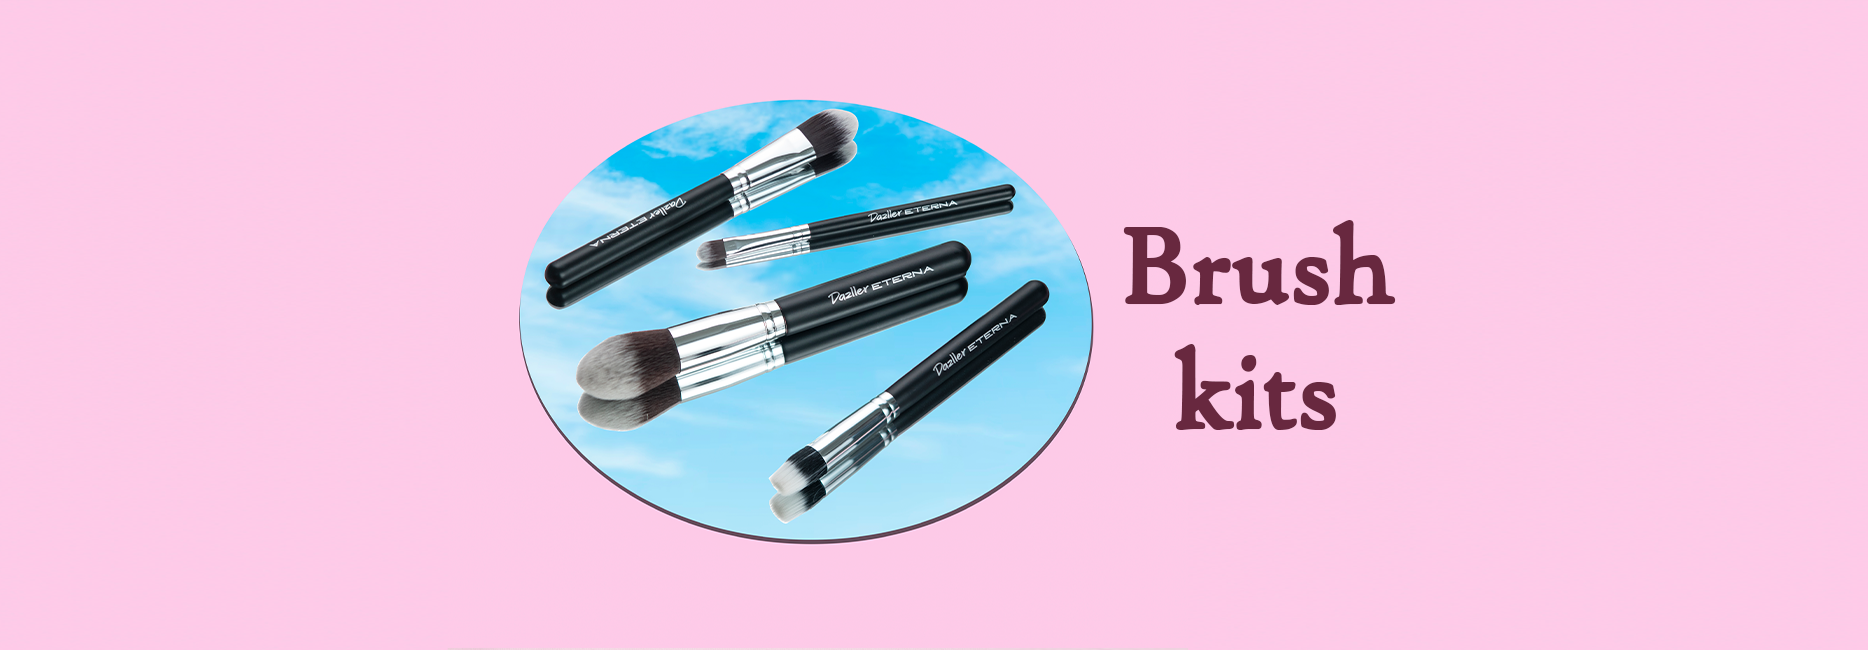 Brush Kits